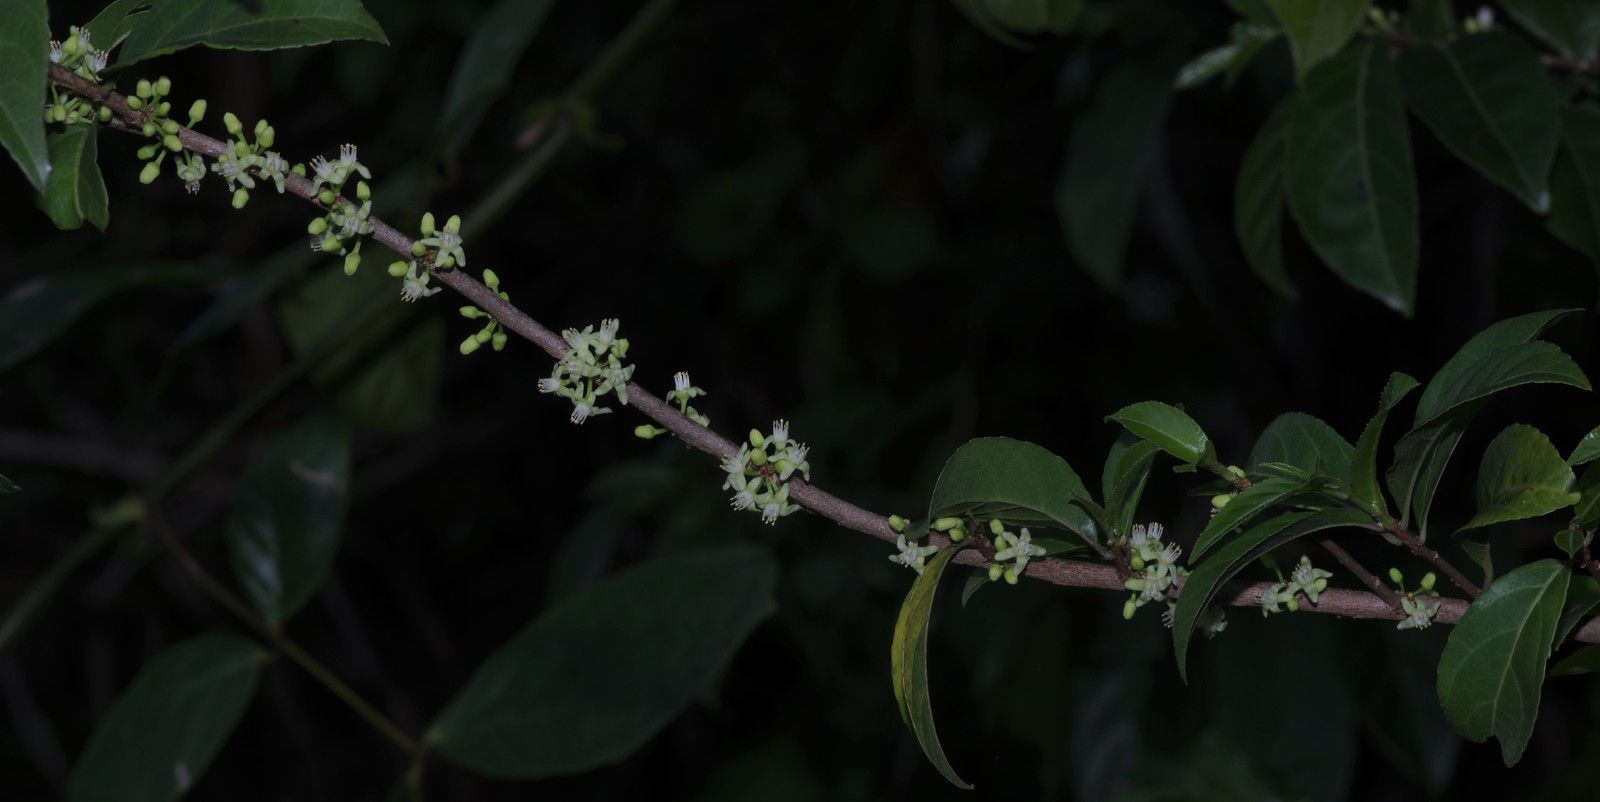 Casearia guianensis